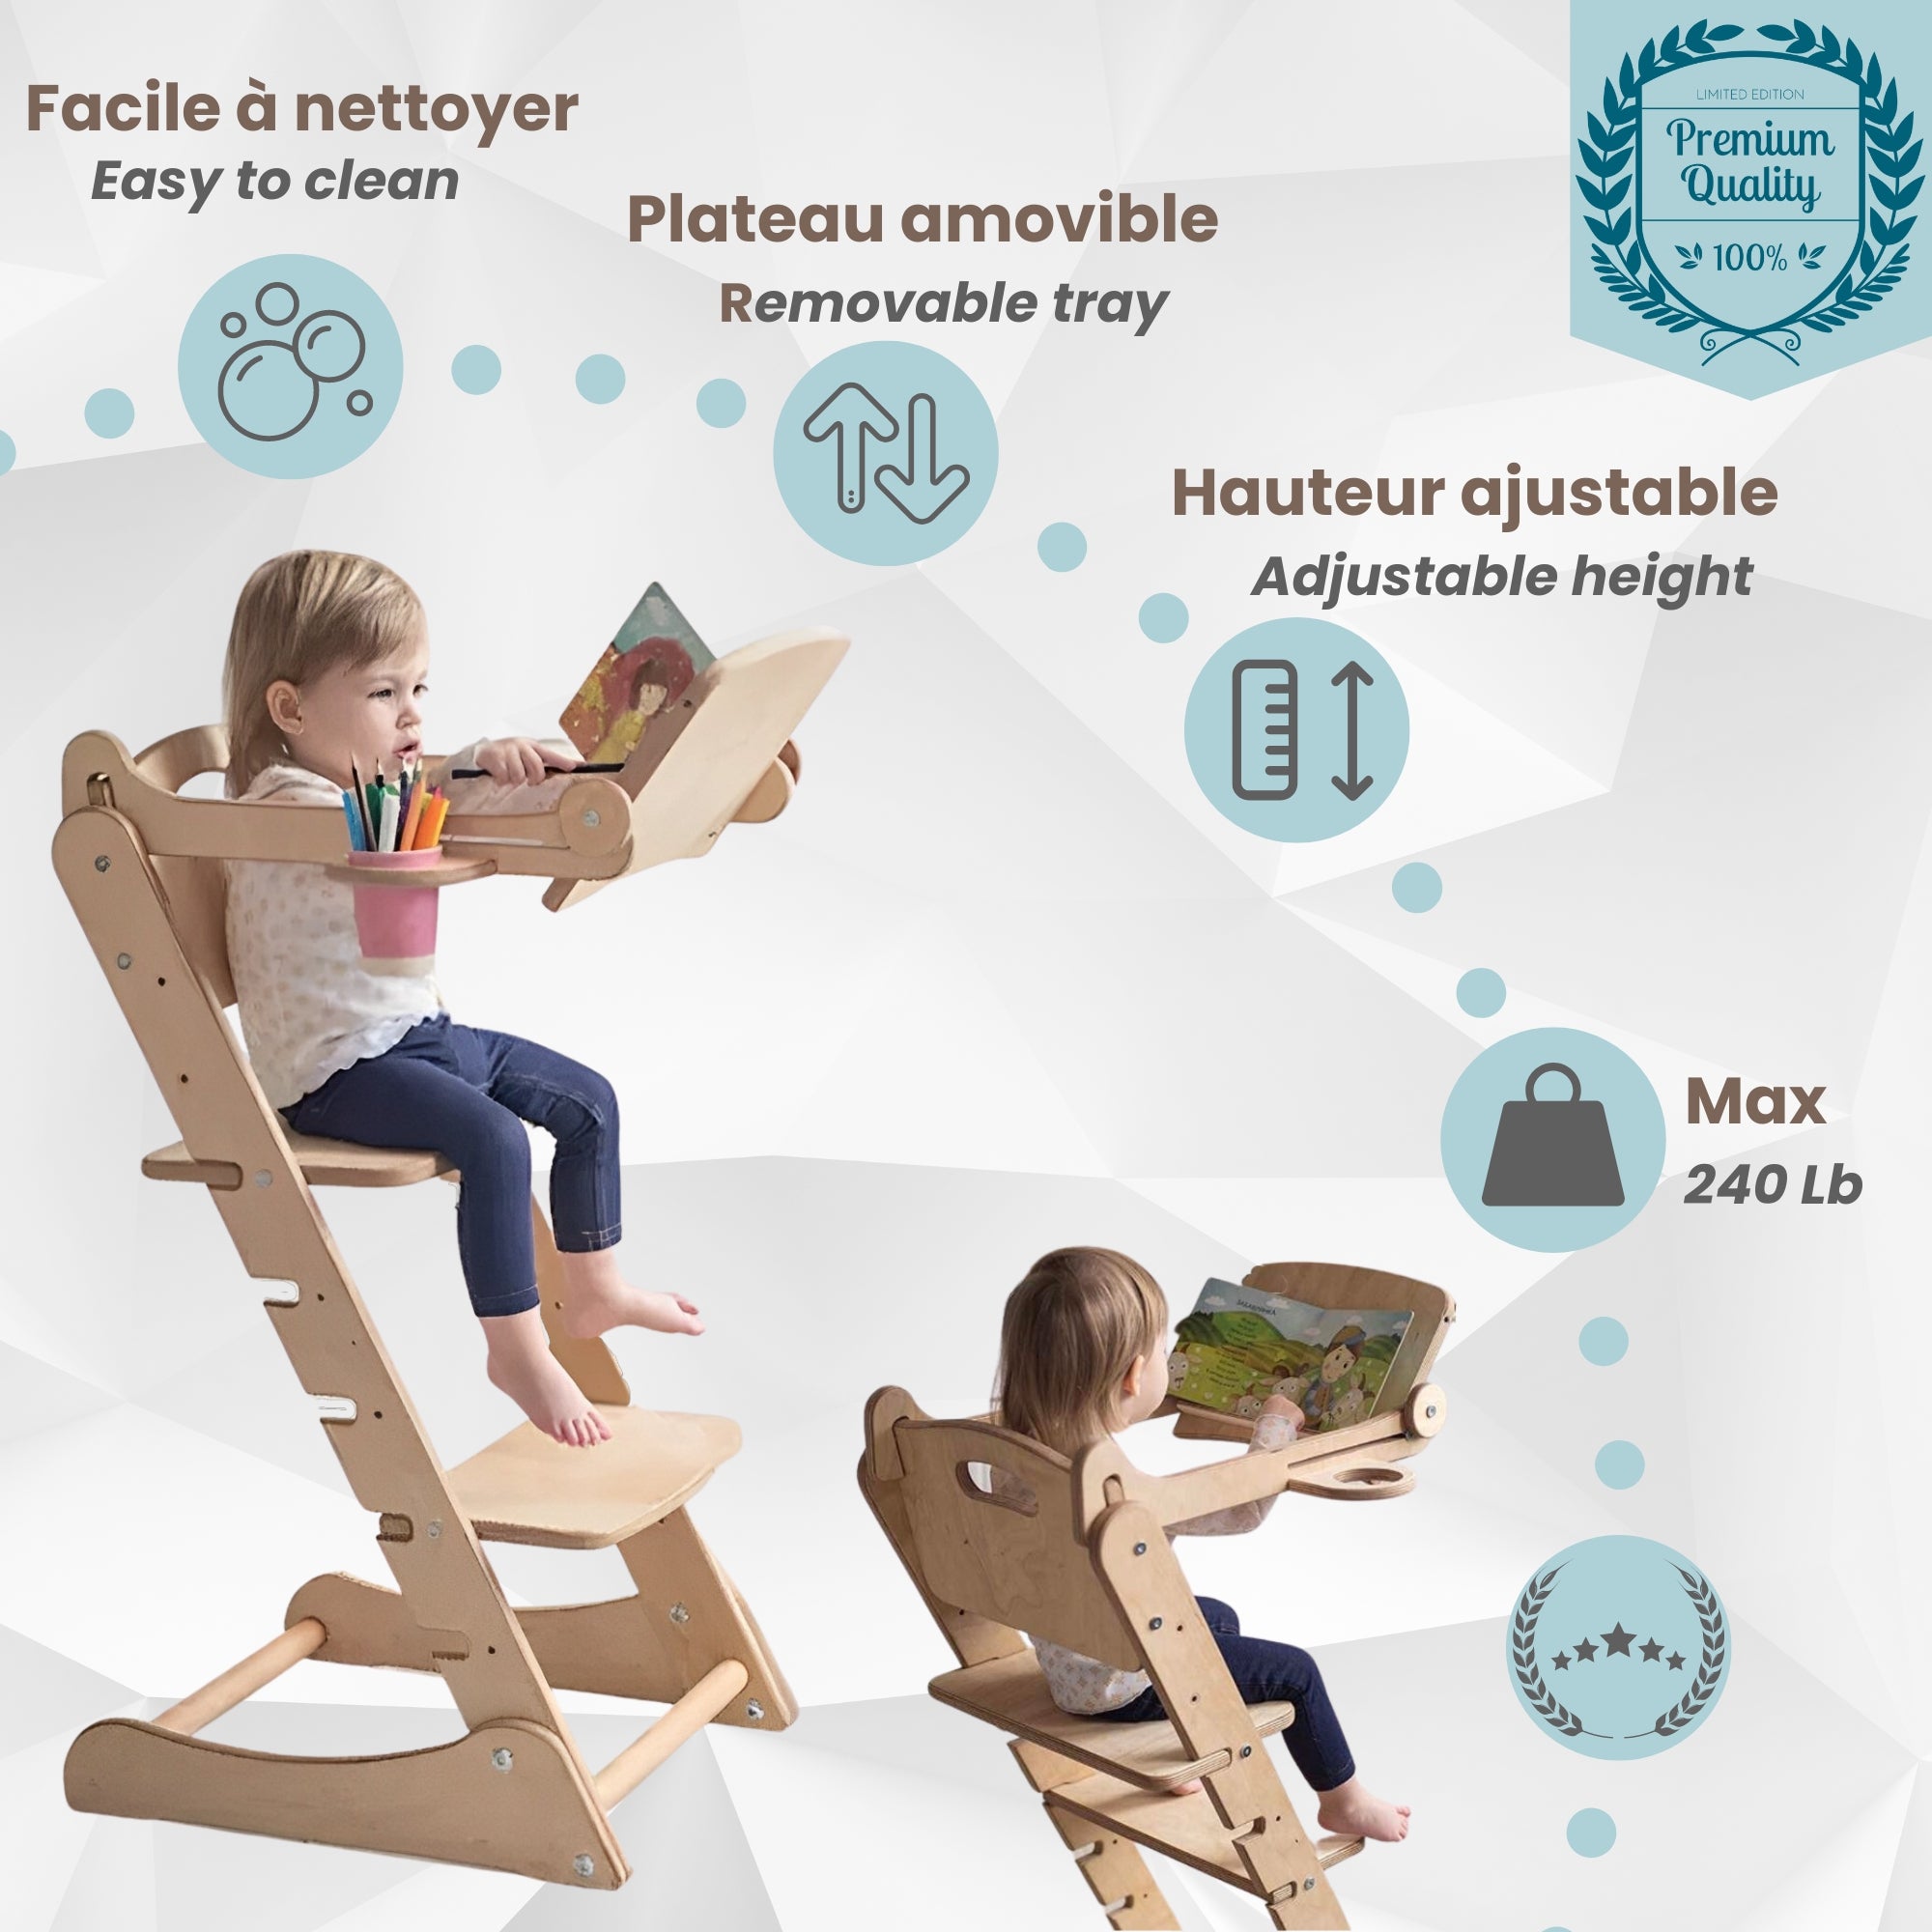 Chaise haute évolutive avec plateau amovible + attache